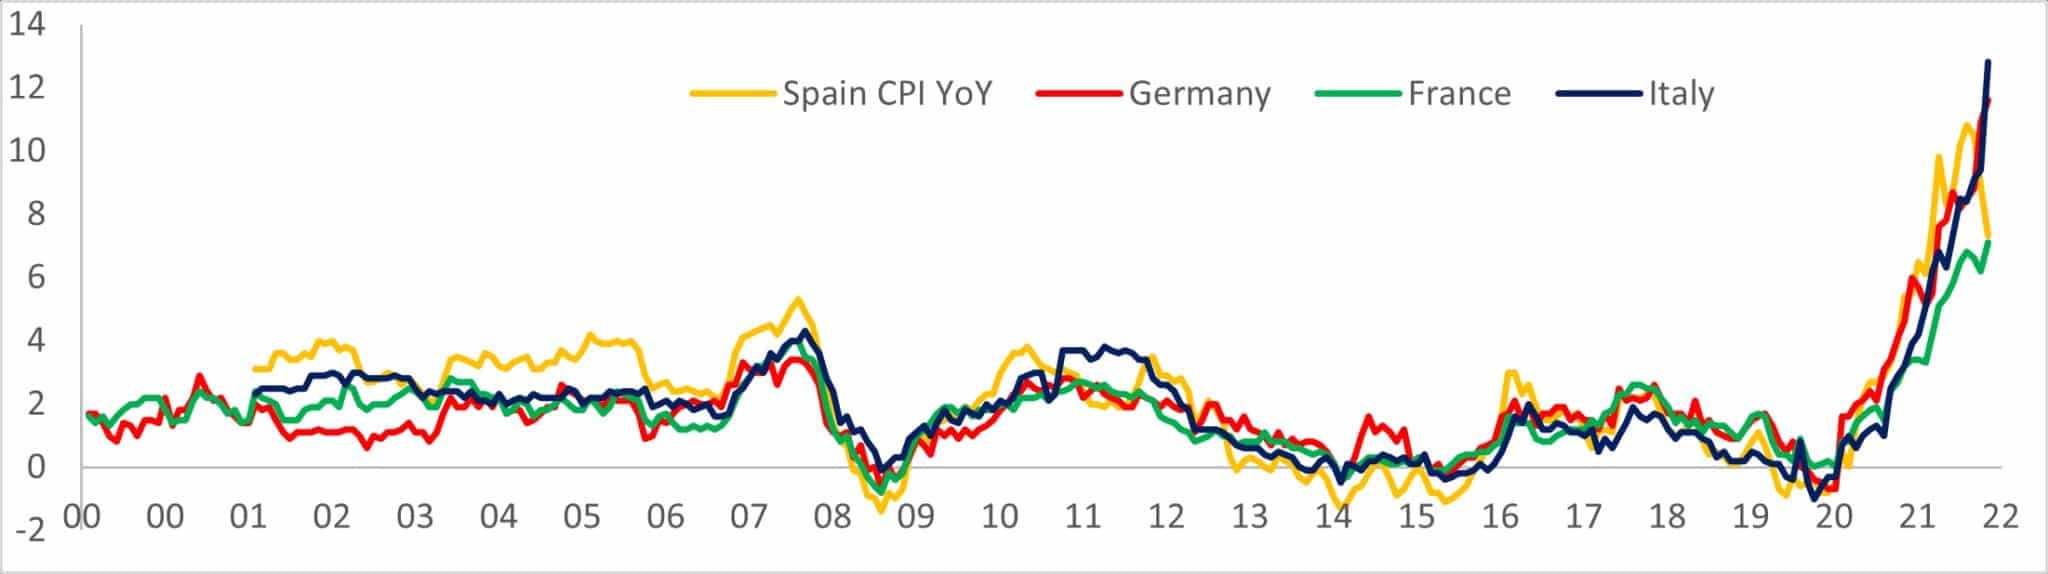 Graf zobrazující meziroční nárůst indexu spotřebitelských cen ve Španělsku, Německu, Francii a Itálii v letech 2000 až 2022